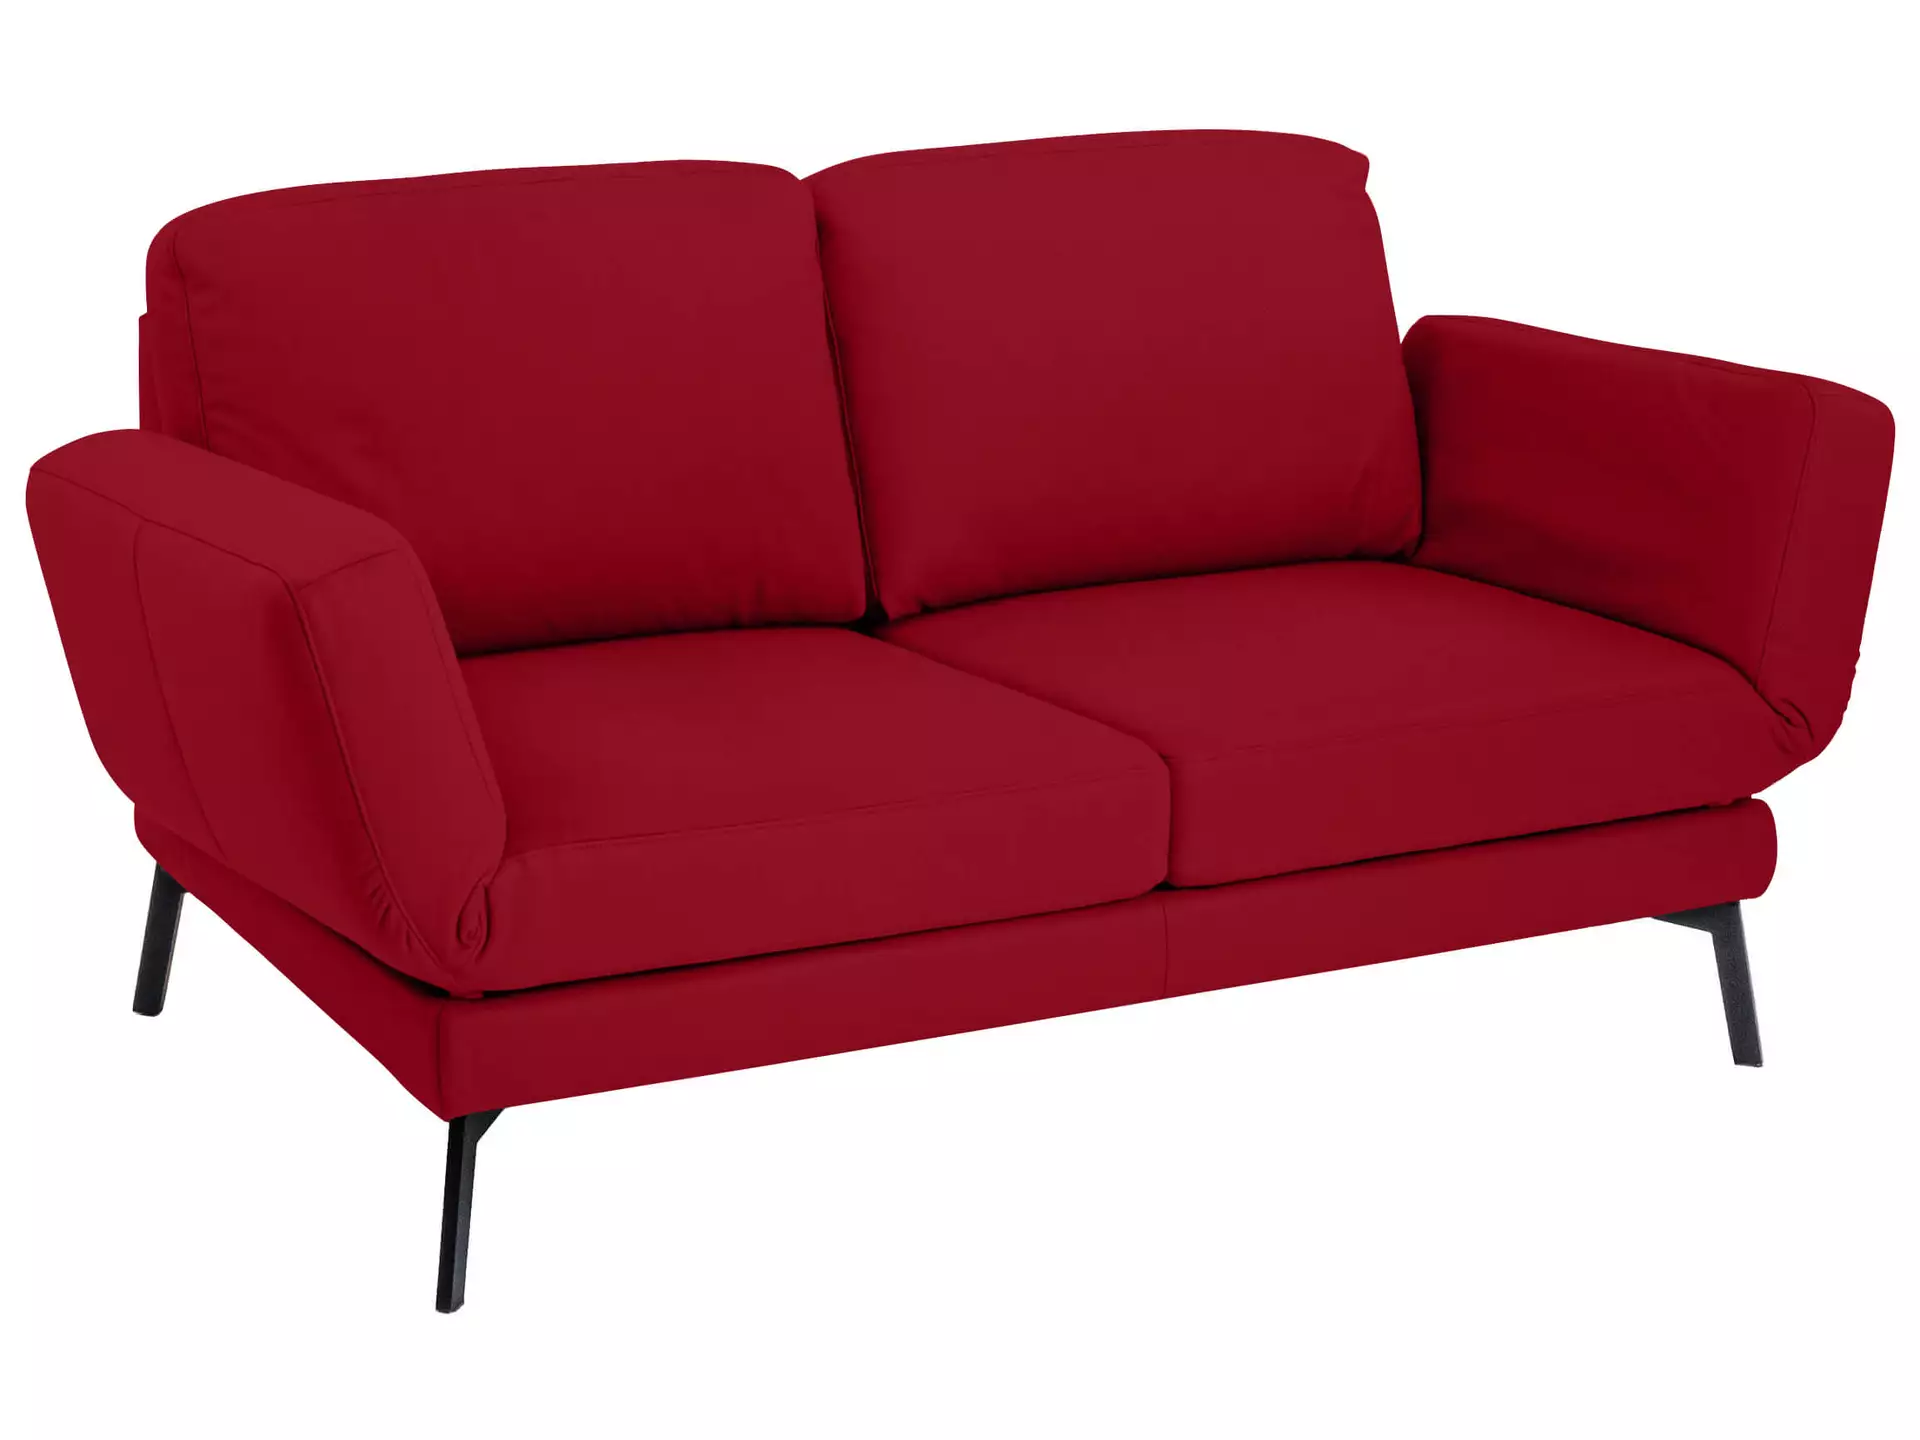 Sofa Toledo Basic Candy / Farbe: Cherry / Material: Leder Basic